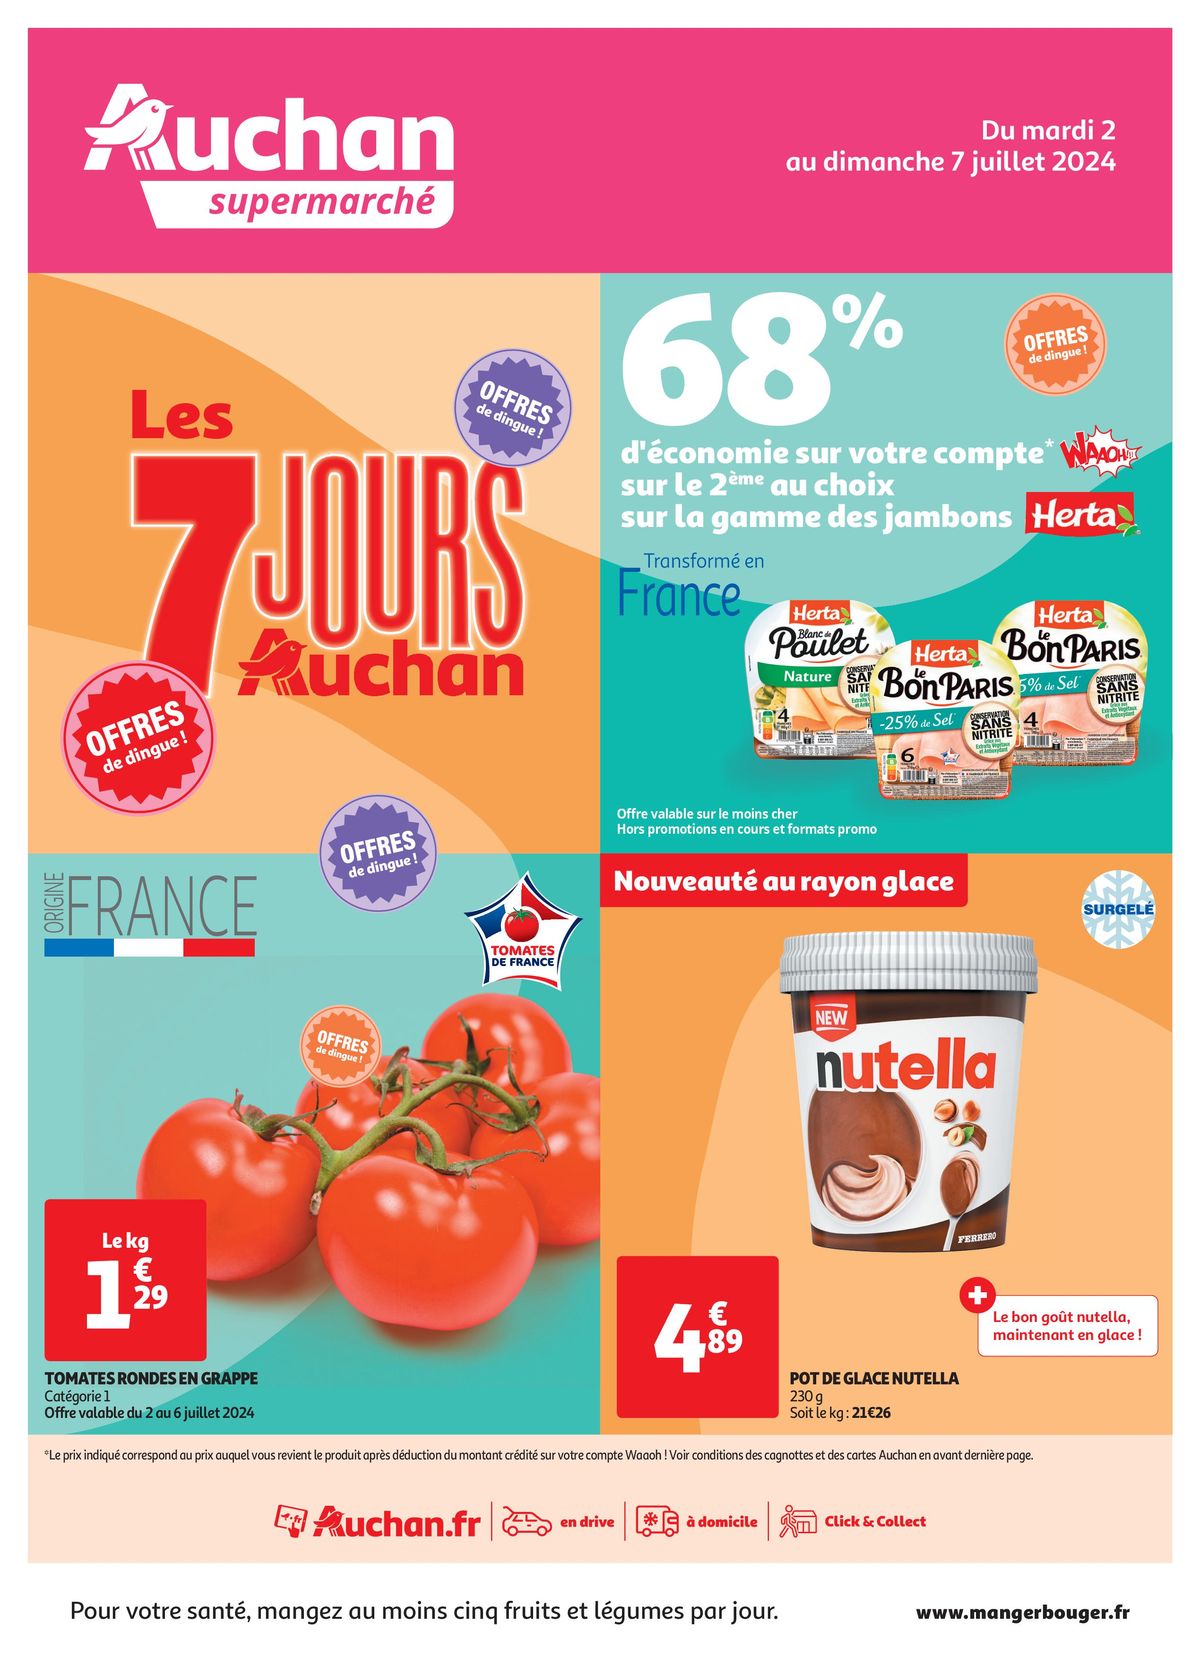 Catalogue C'est les 7 jours Auchan dans votre super !, page 00001